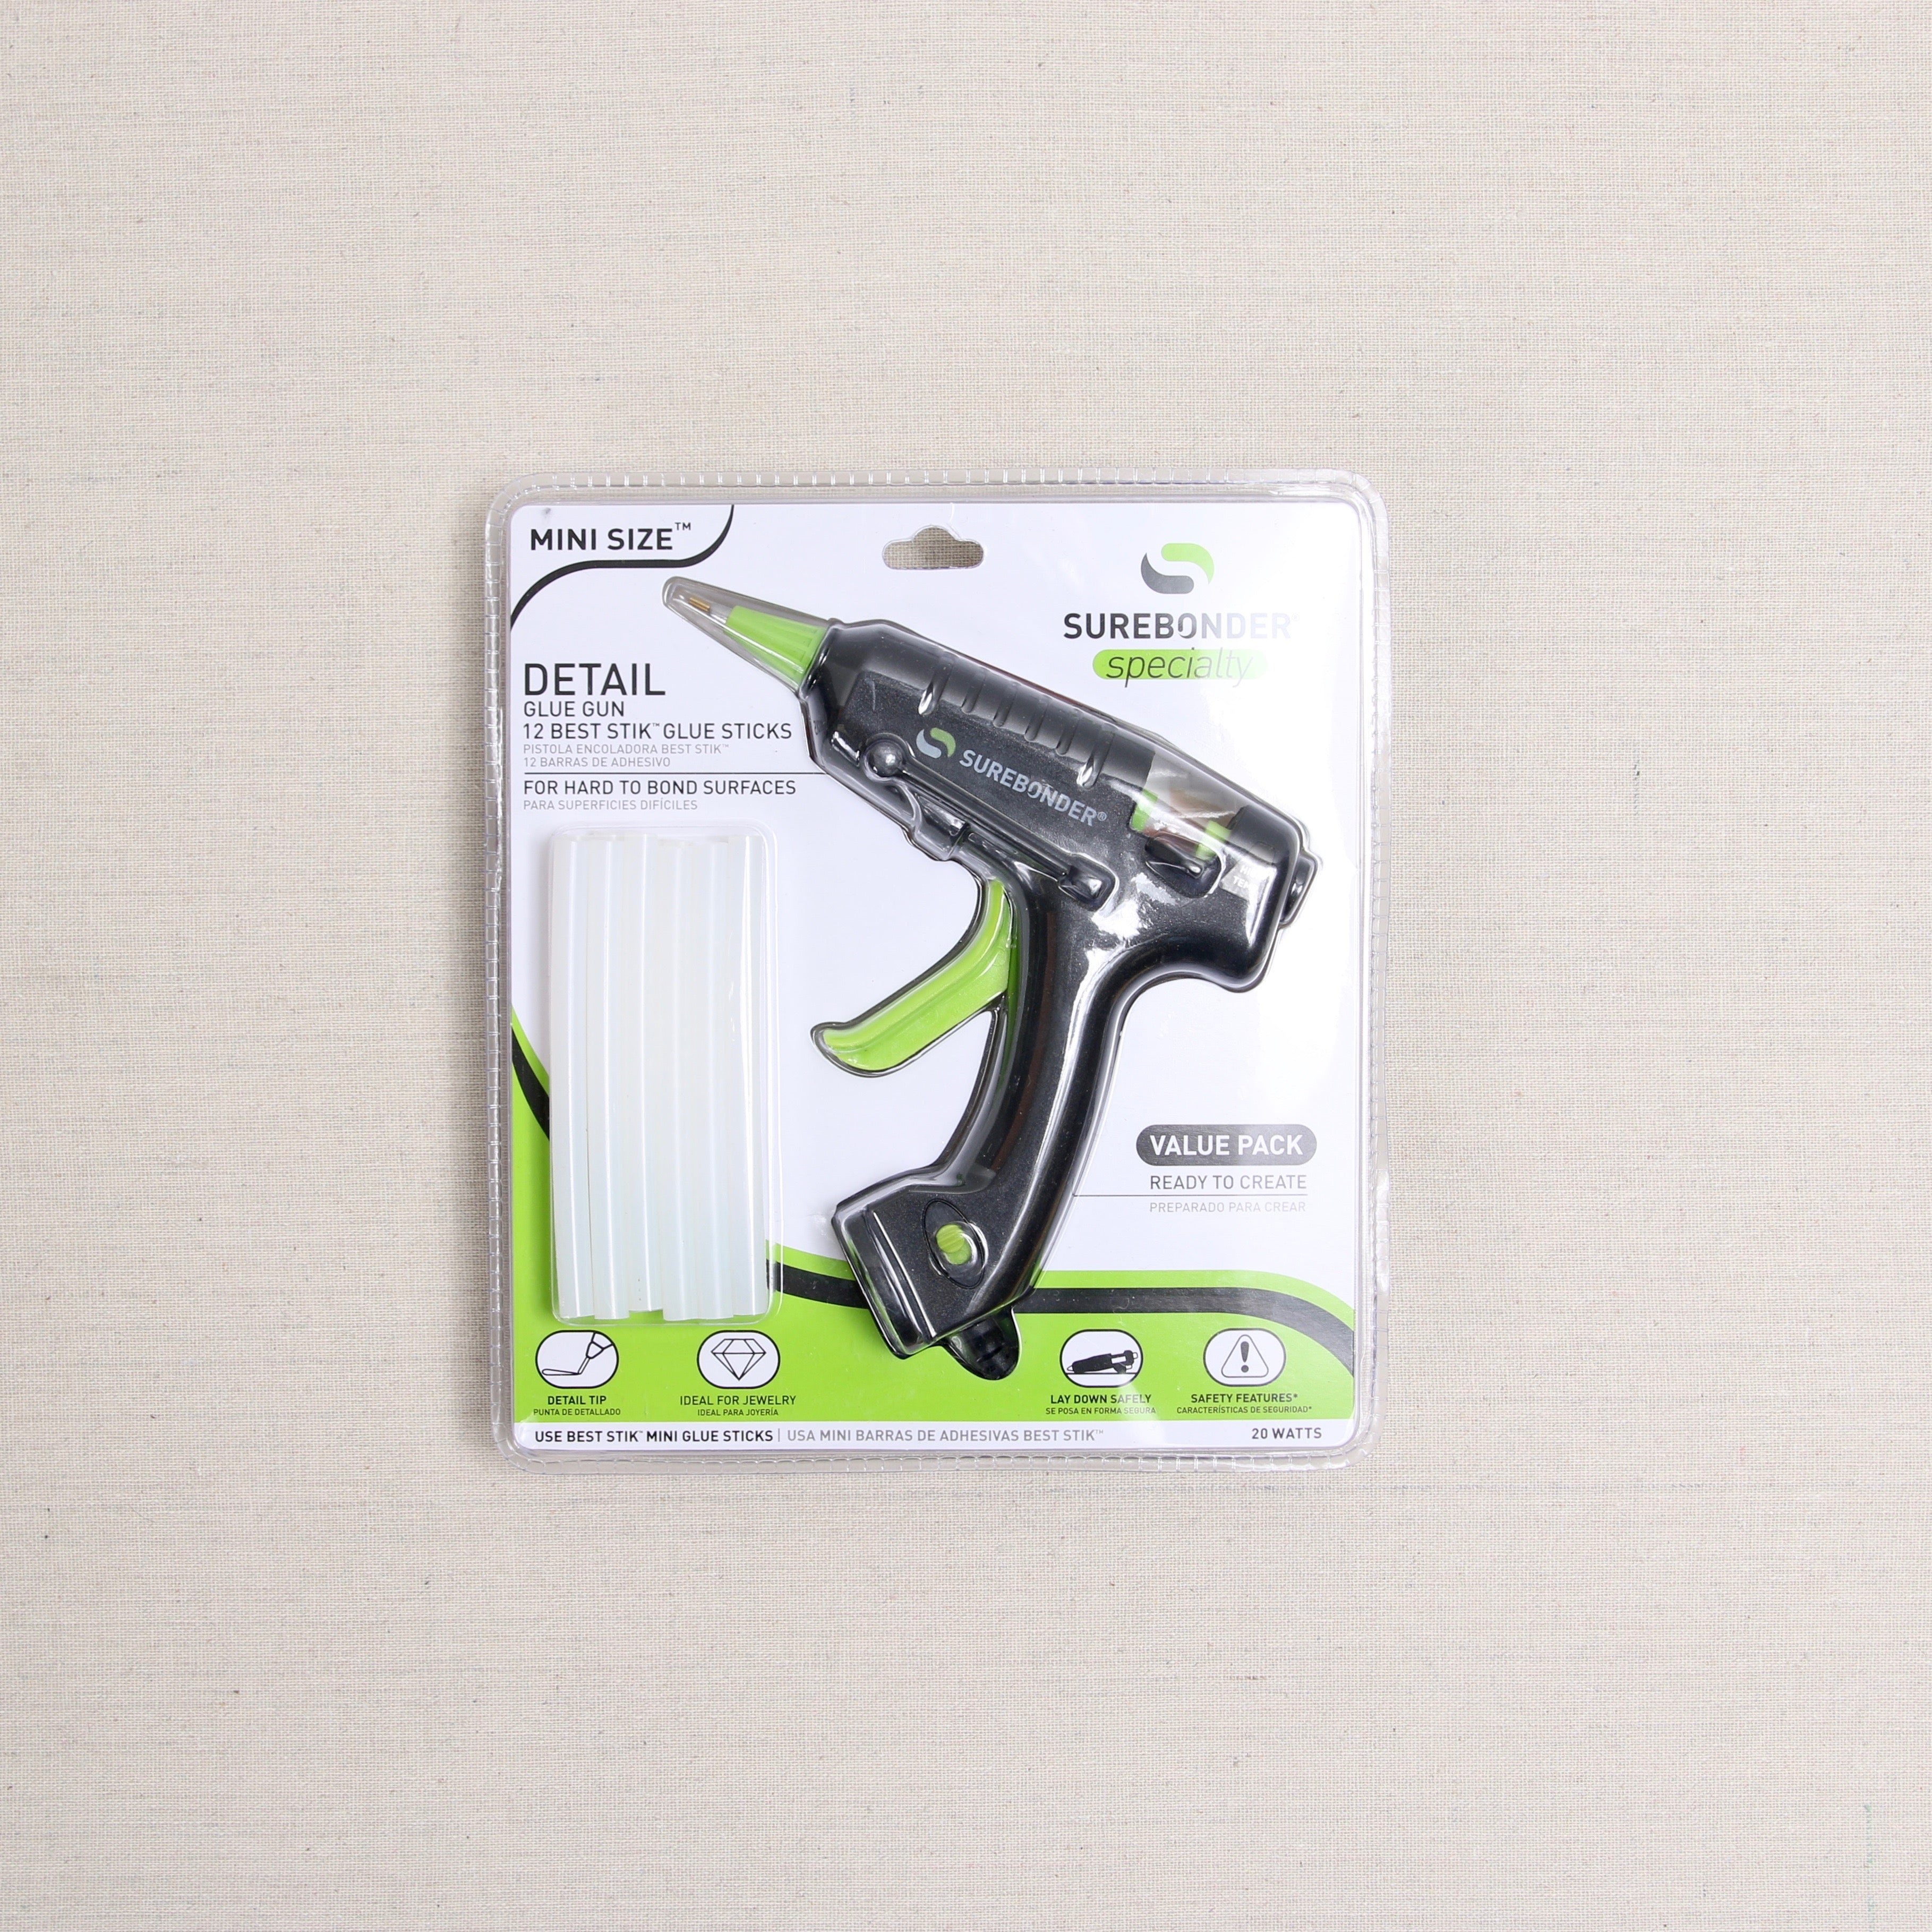 Surebonder High Temp Mini Detail Tip Glue Gun Kit, Includes 12